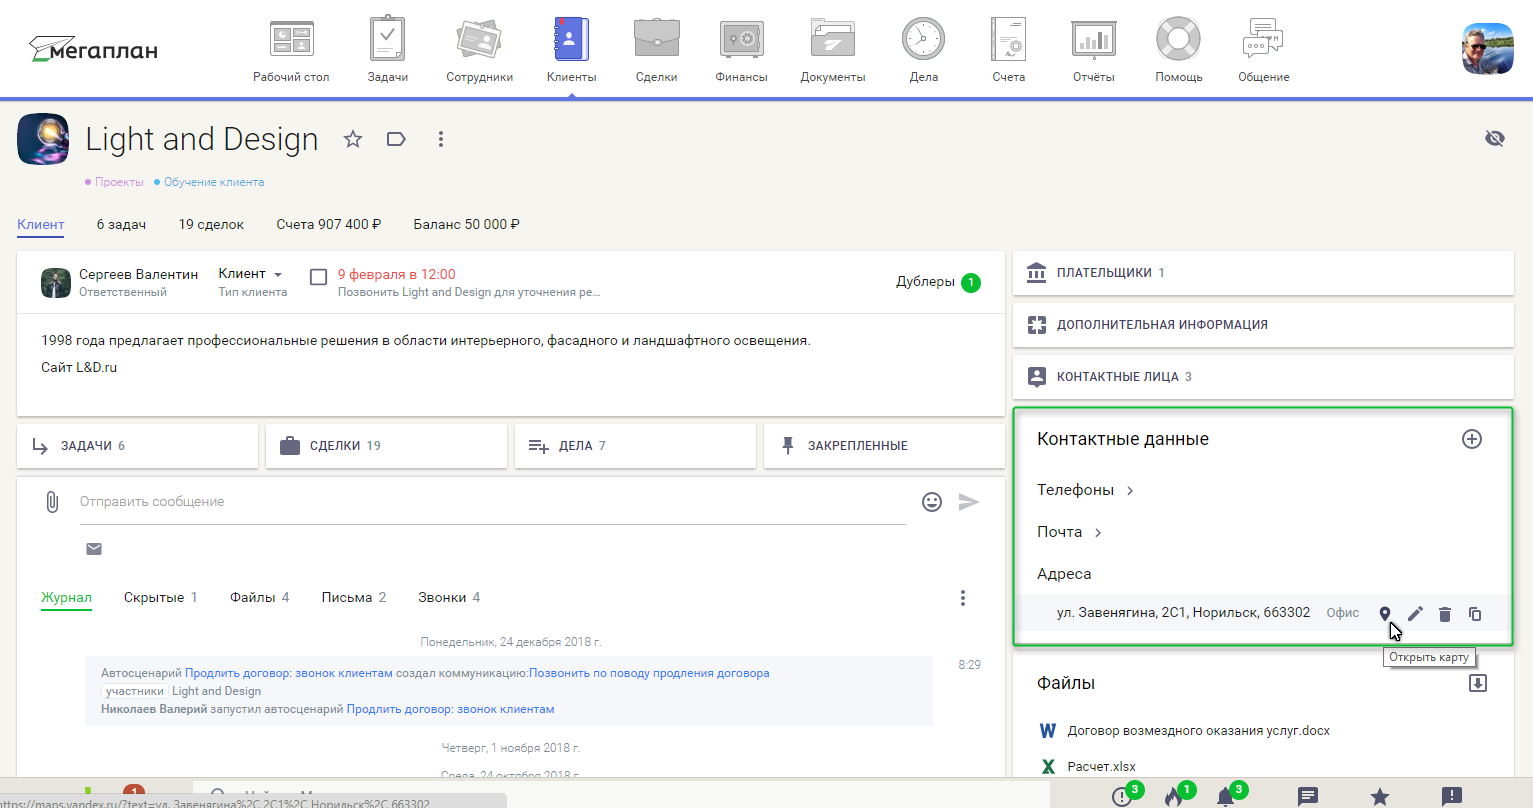 Обновление 2019.02 — мегапочта, модуль по умолчанию, скрытое редактирование, интеграция с Яндекс.Картами, создание дел из комментариев